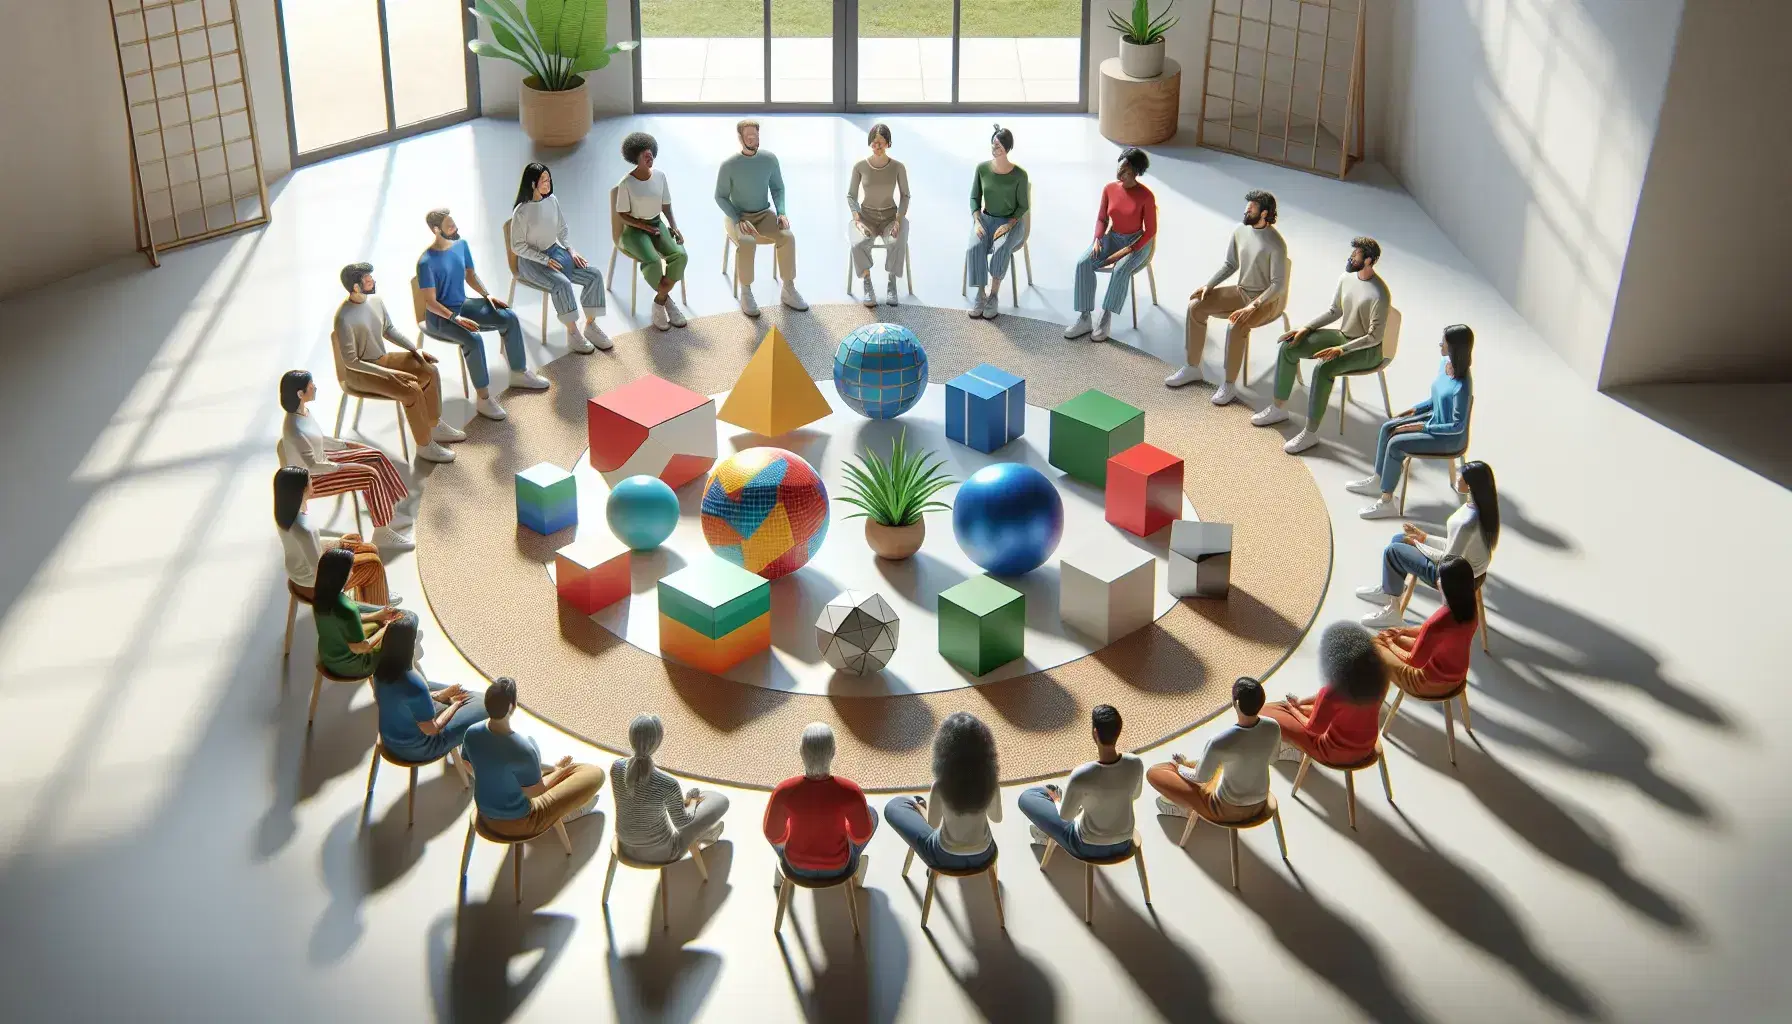 Grupo diverso de personas sentadas en círculo alrededor de una mesa con figuras geométricas y una planta, en una sala iluminada naturalmente.